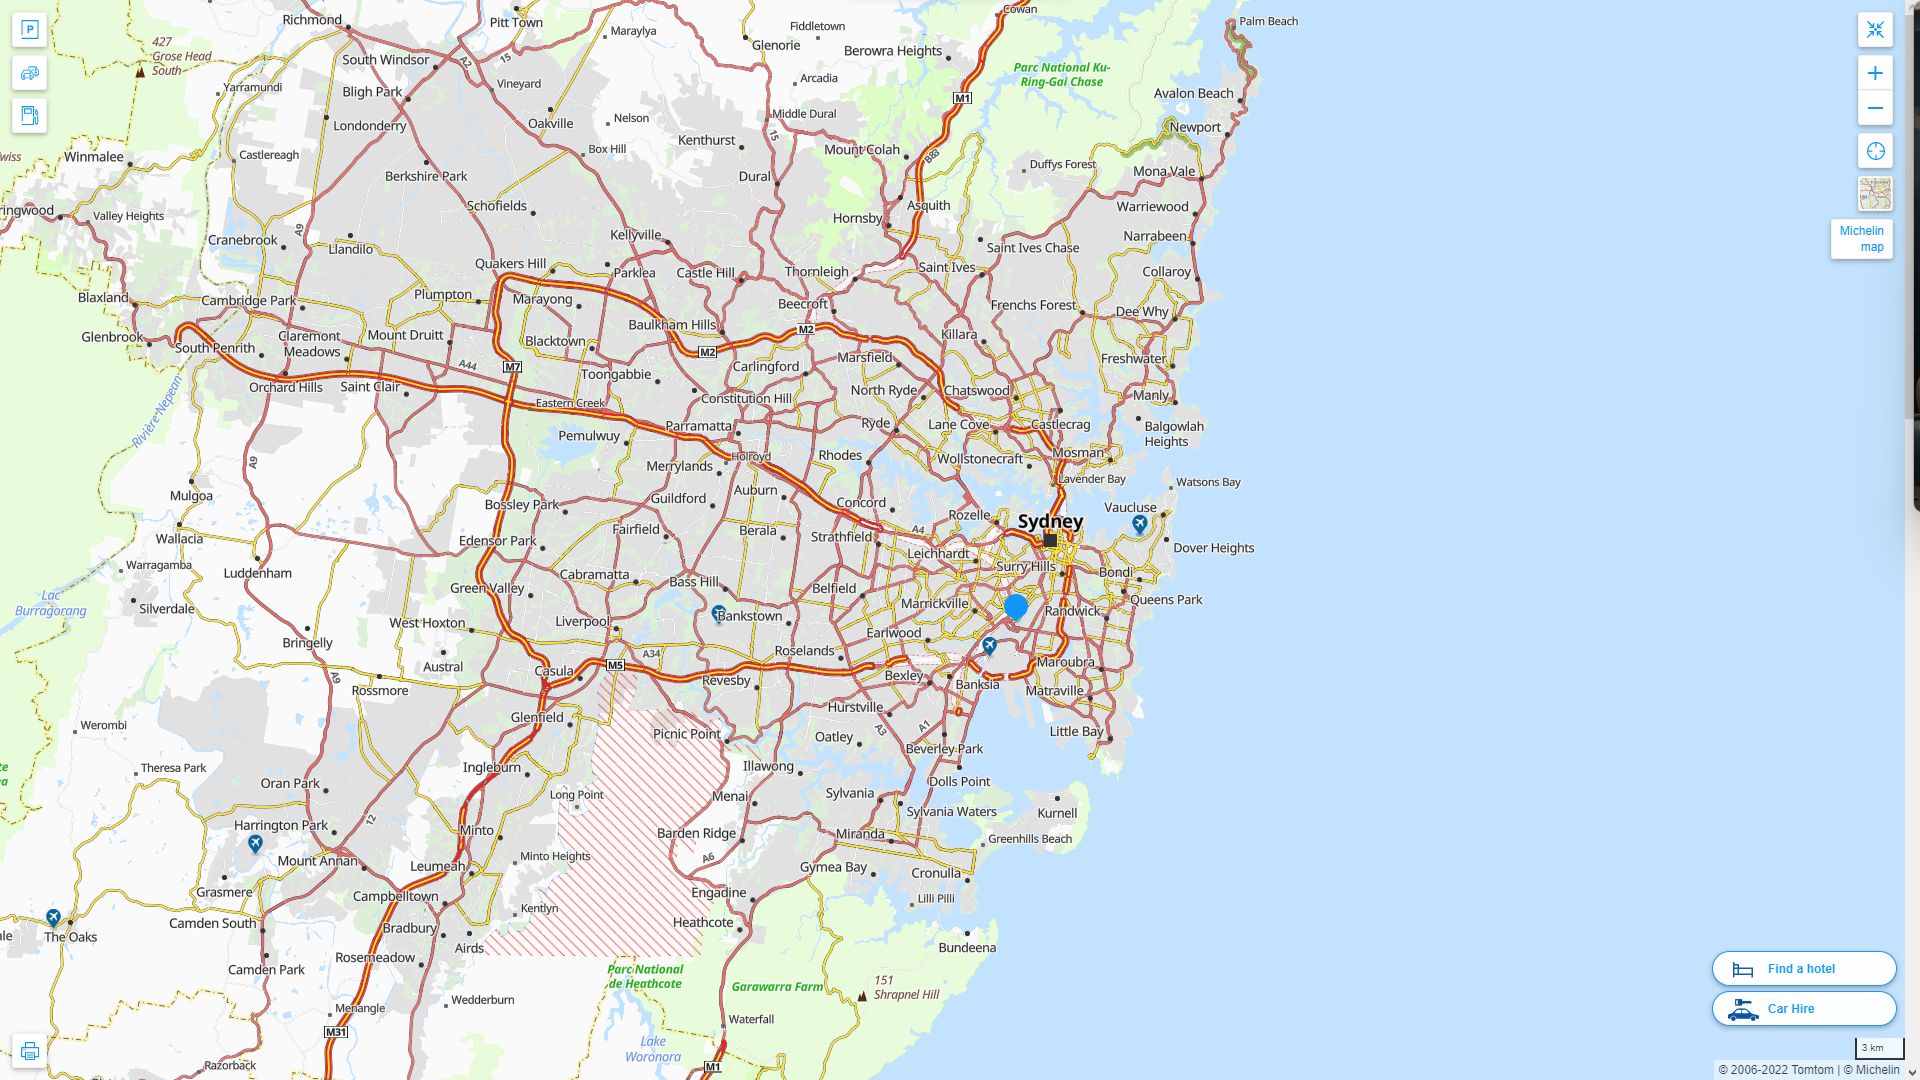 Sydney Australie Autoroute et carte routiere